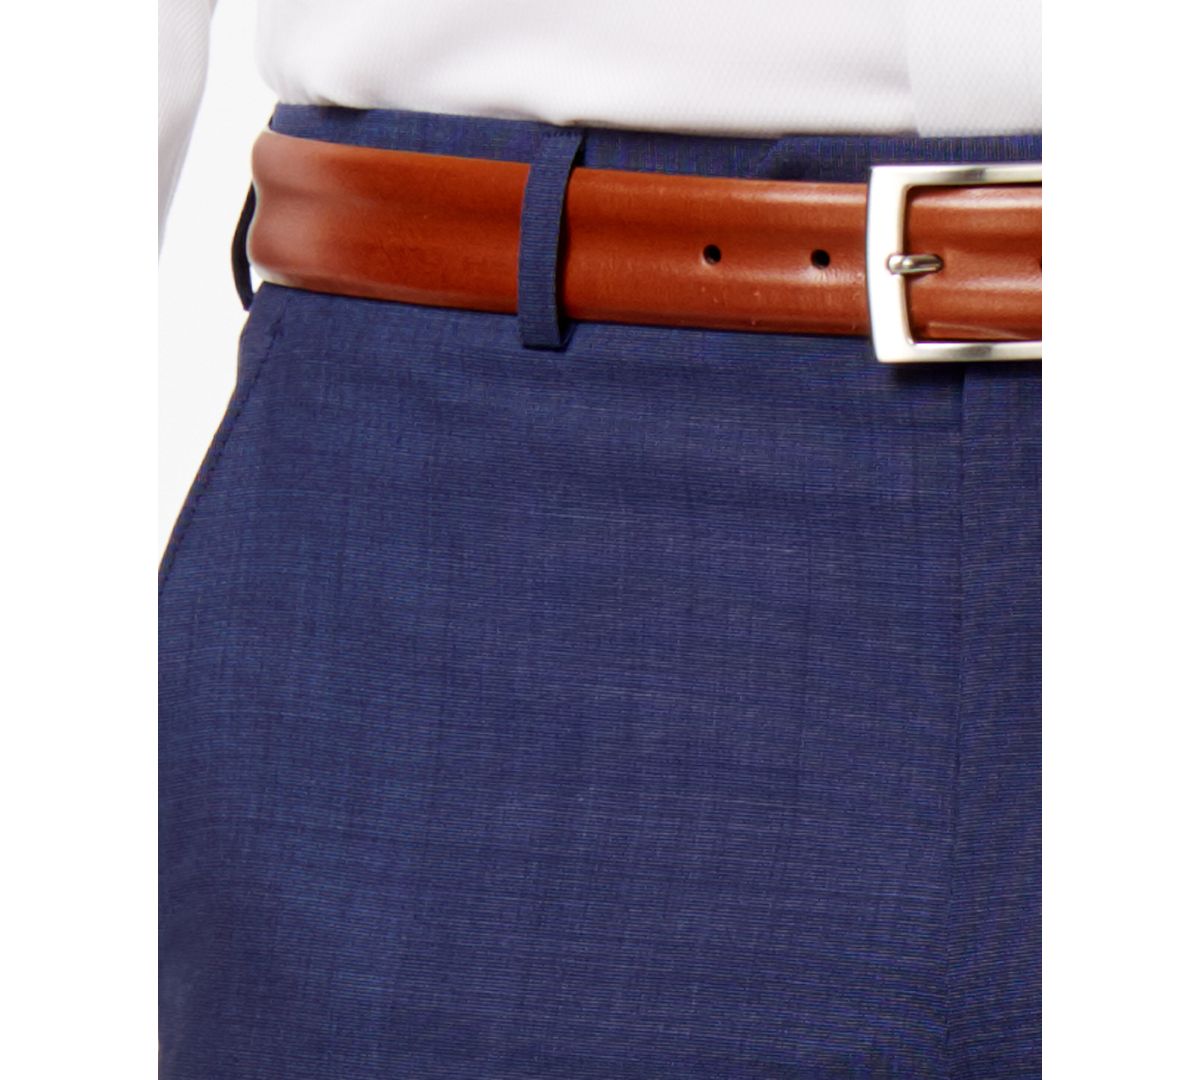 Lauren Ralph Lauren Solid Ultraflex Classic-fit Wool Dress Pants Medium Blue